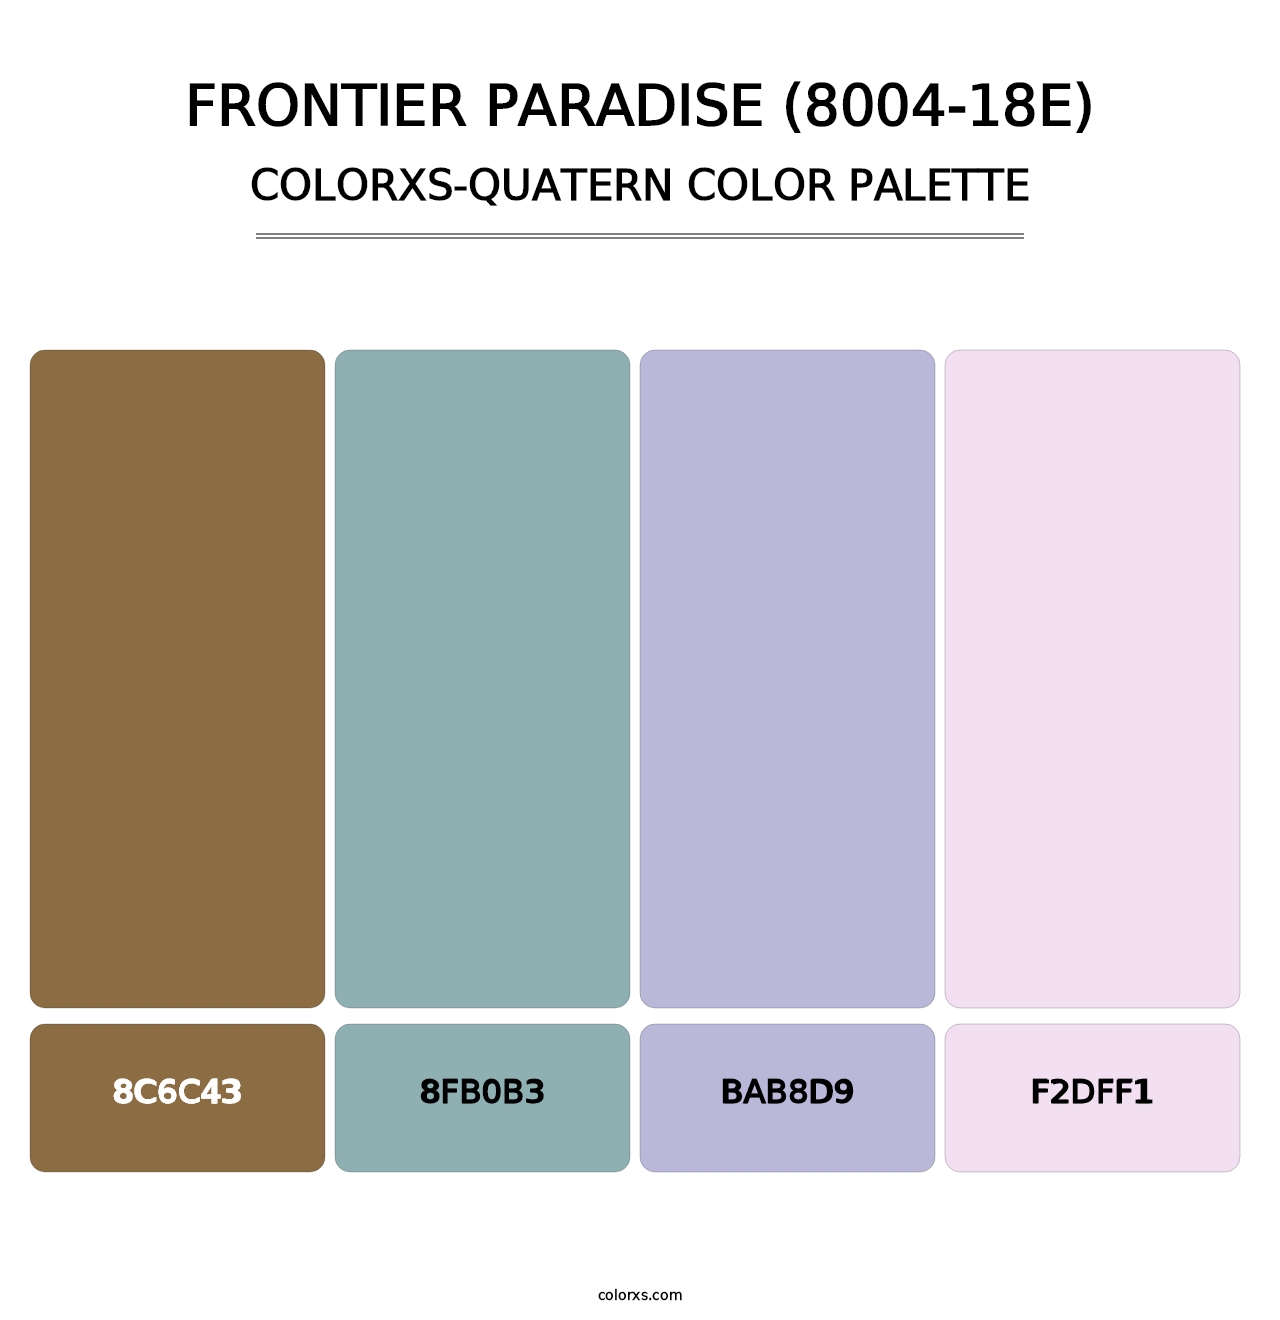 Frontier Paradise (8004-18E) - Colorxs Quatern Palette